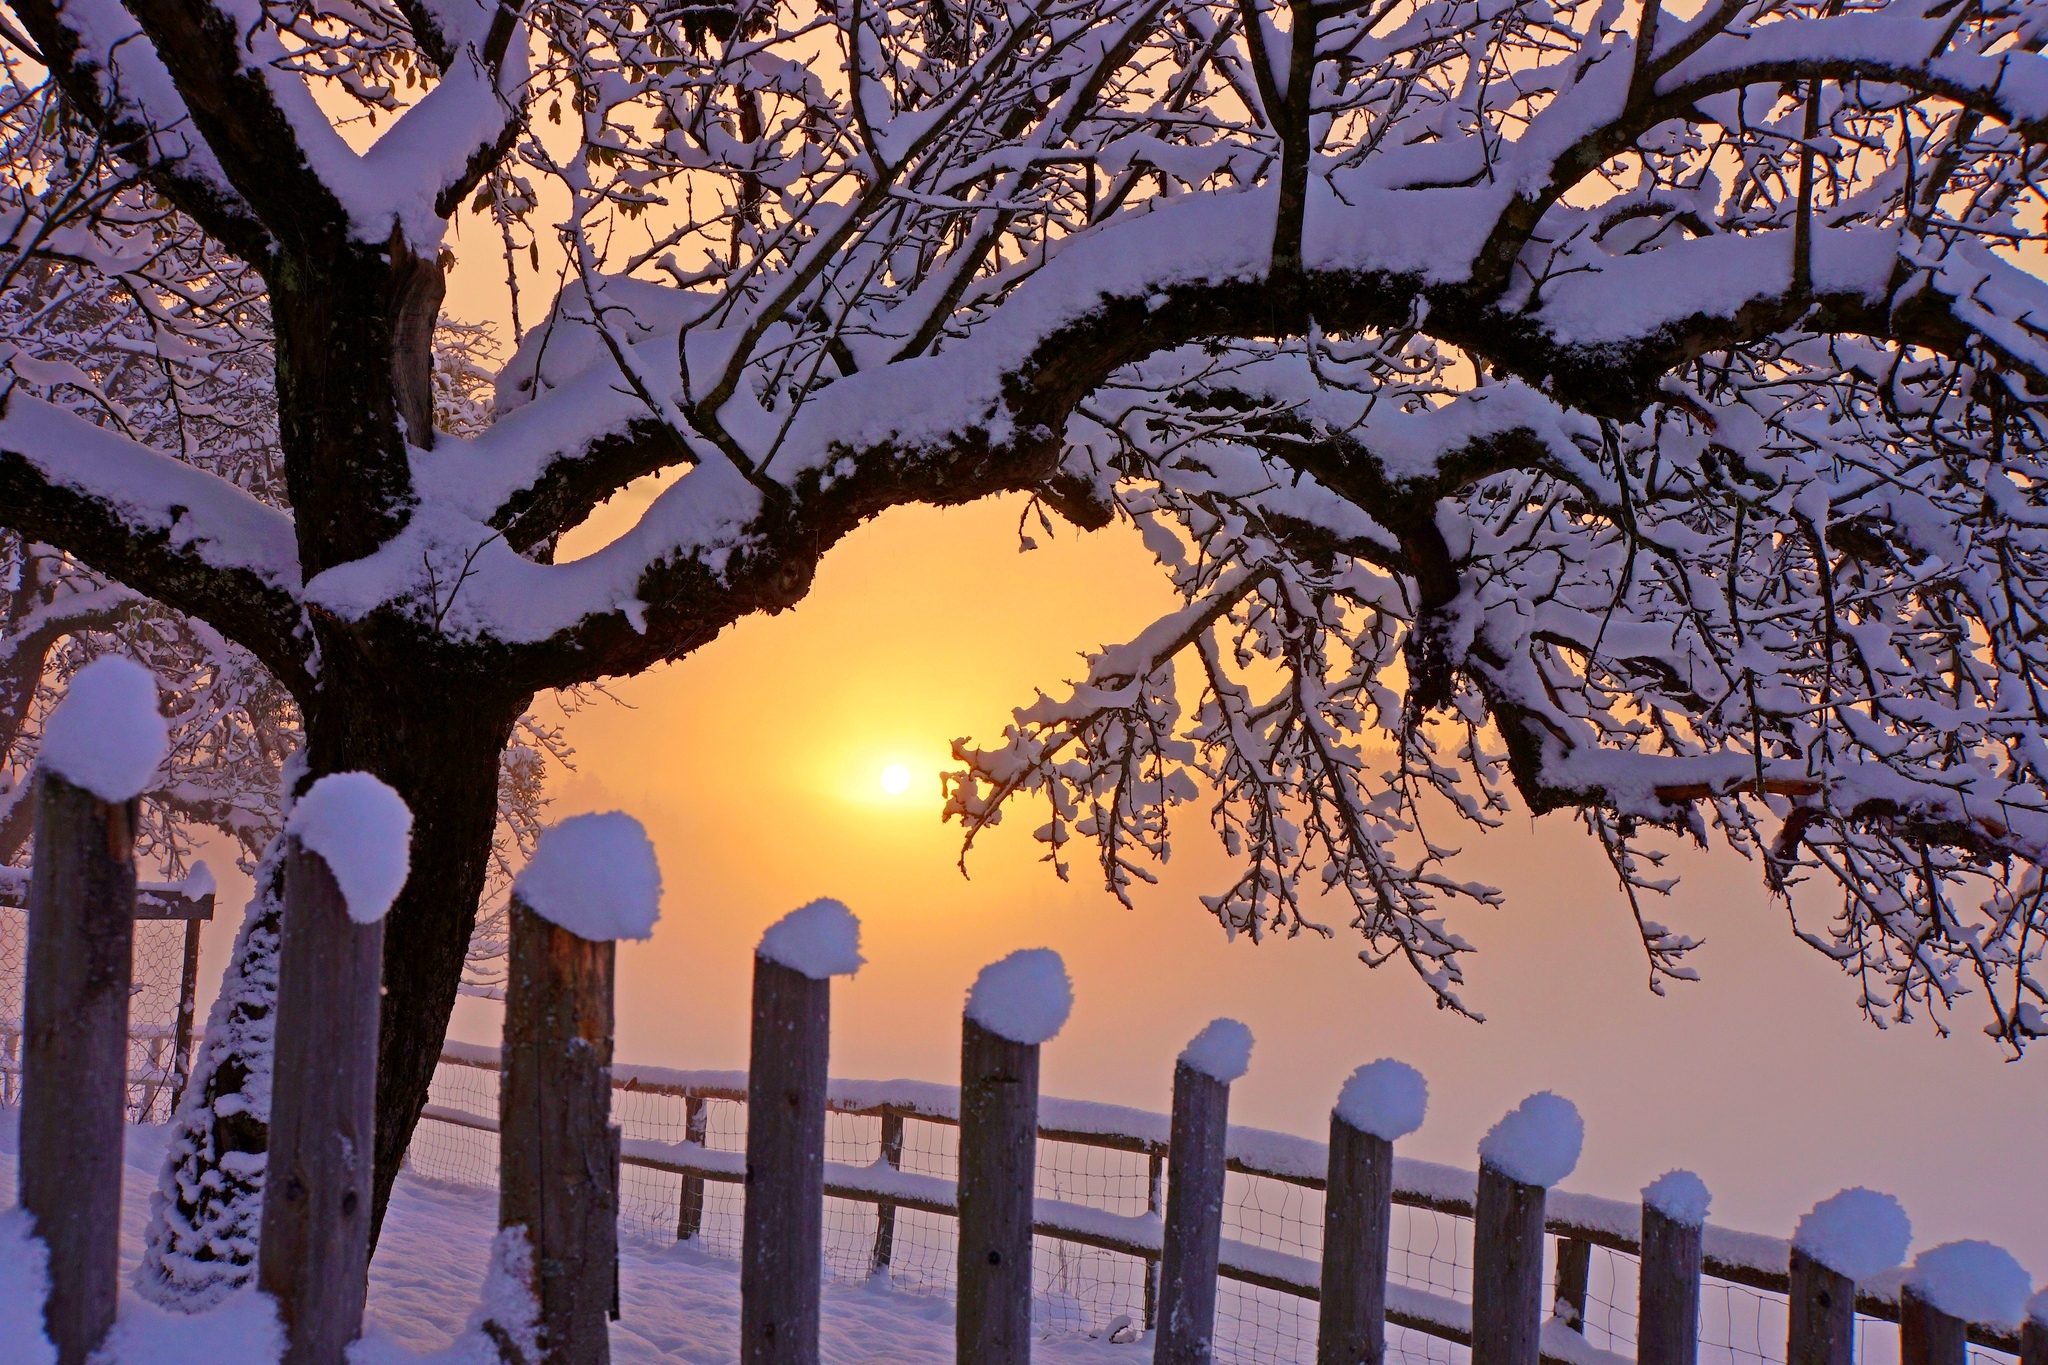 Скачать обои бесплатно Зима, Закат, Снег, Дерево, Земля, Ограда, Фотографии картинка на рабочий стол ПК